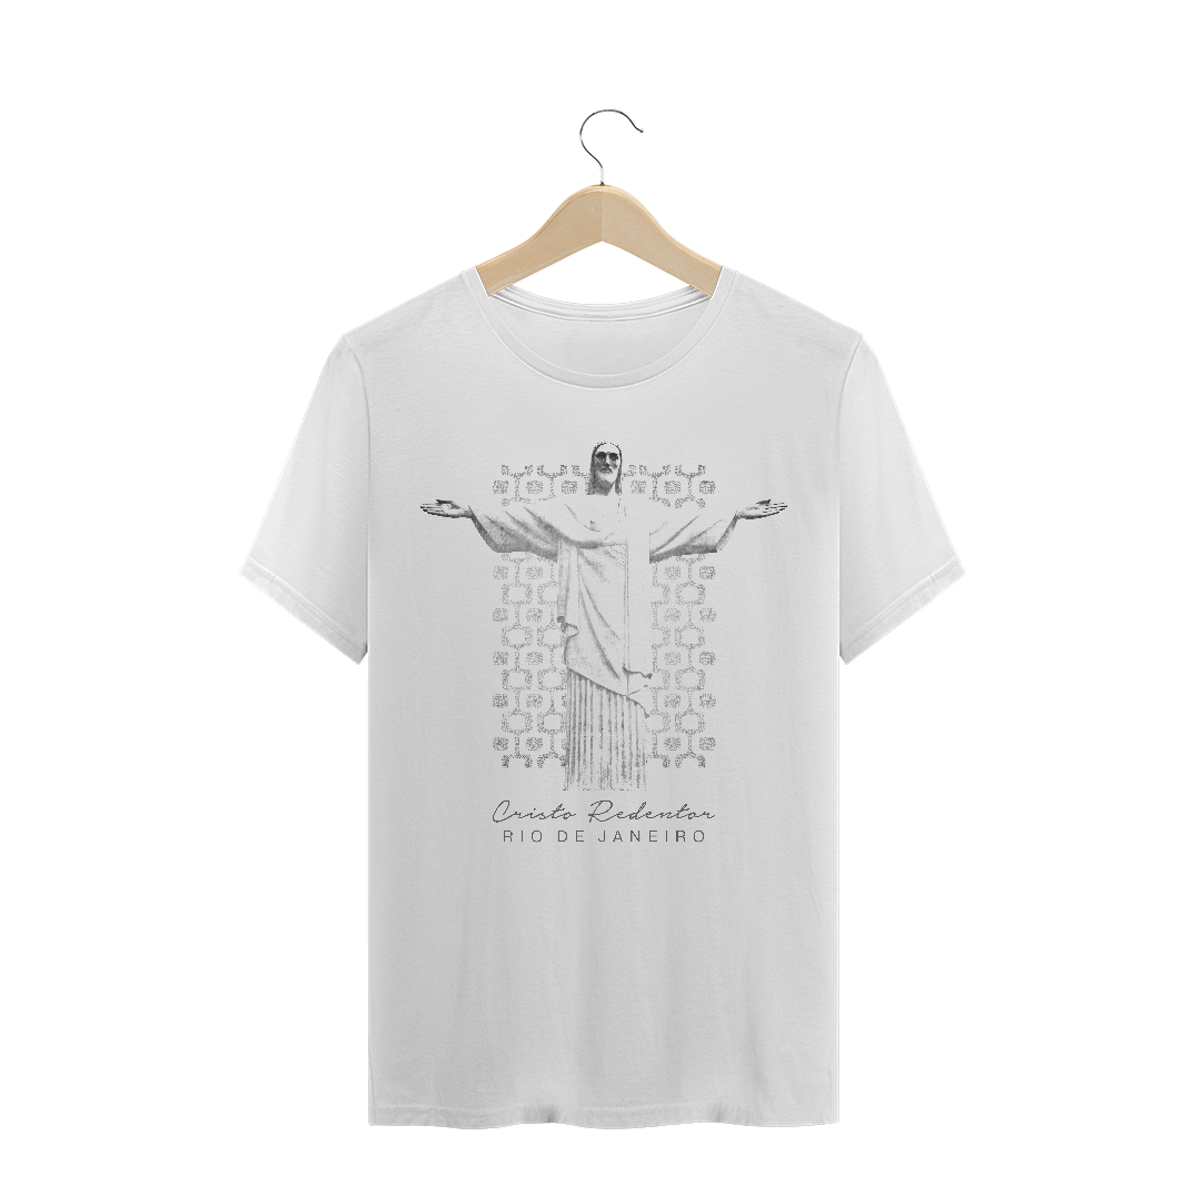 Nome do produto: Camiseta Masculina Cristo Redentor braços abertos calçadão Ipanema